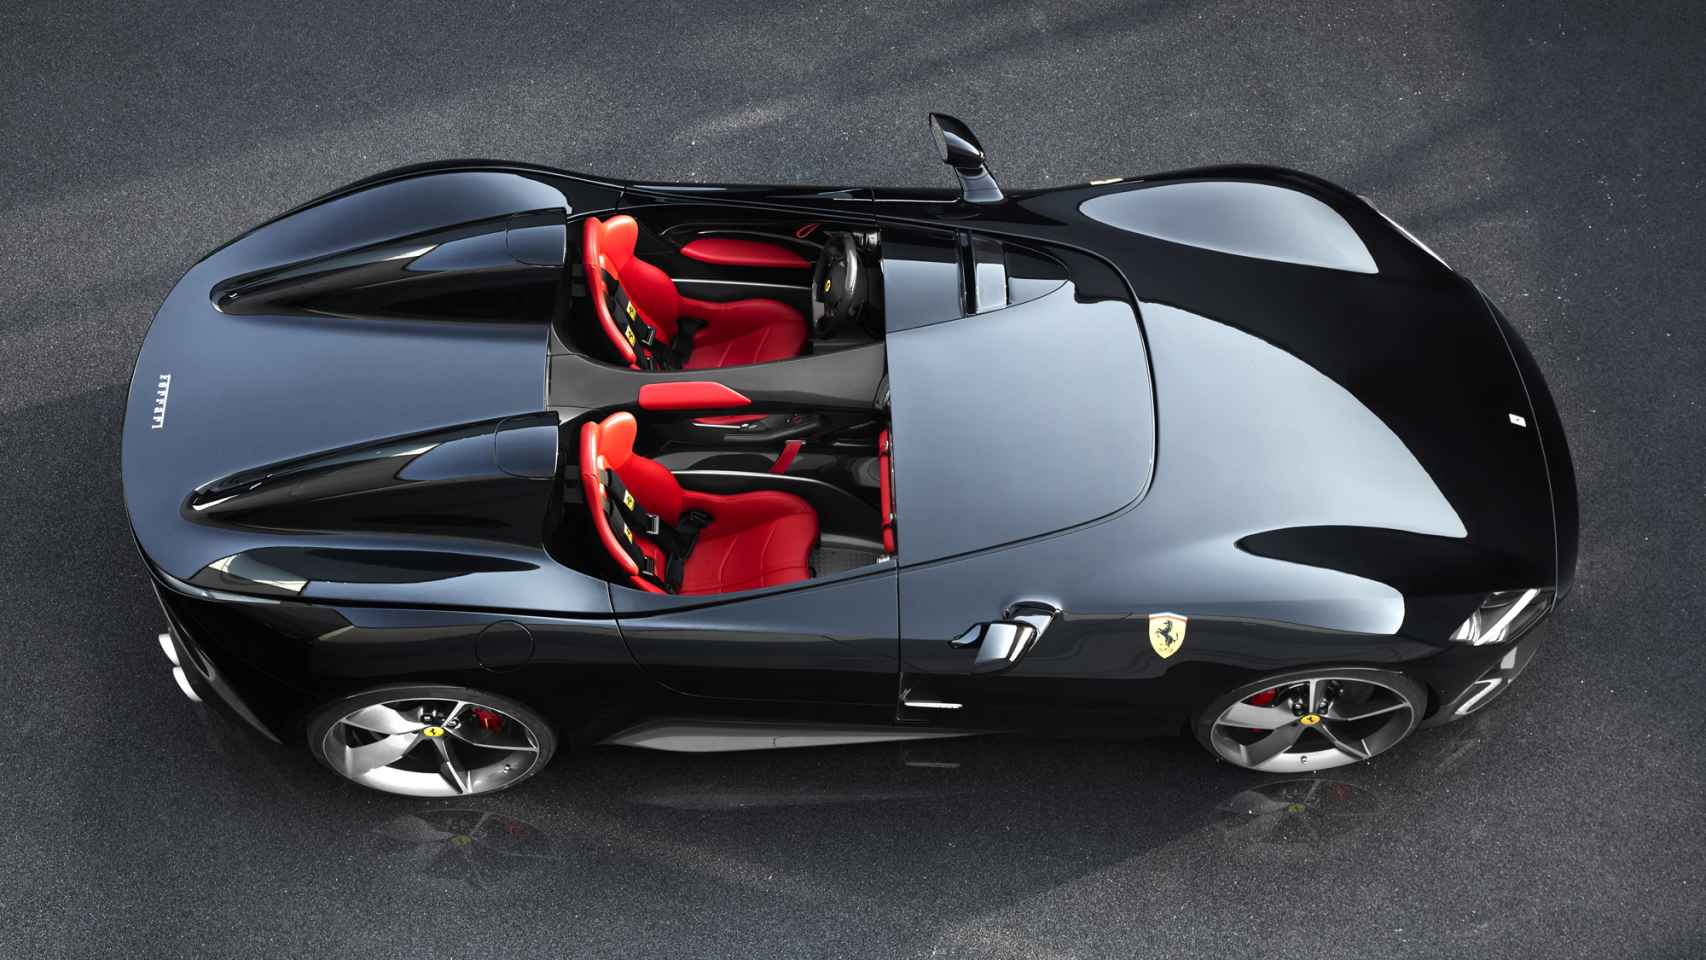 Modelo de Ferrari pensado en los coleccionistas.